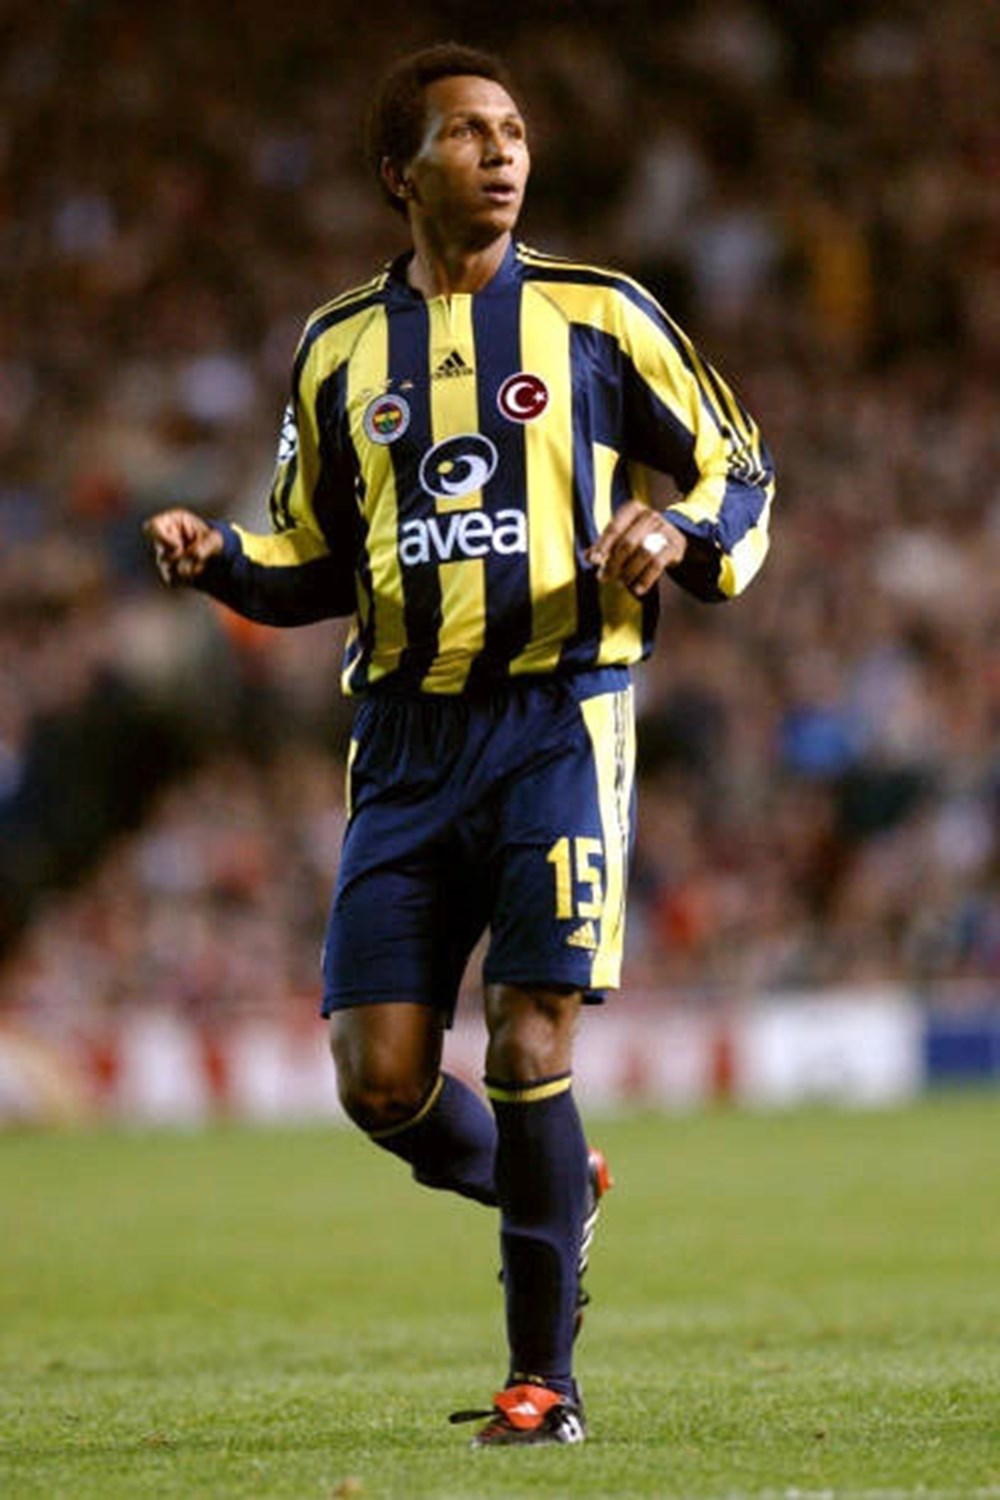 Yapay zekaya göre Fenerbahçe tarihinin en iyi ilk 11'i - 7. Foto